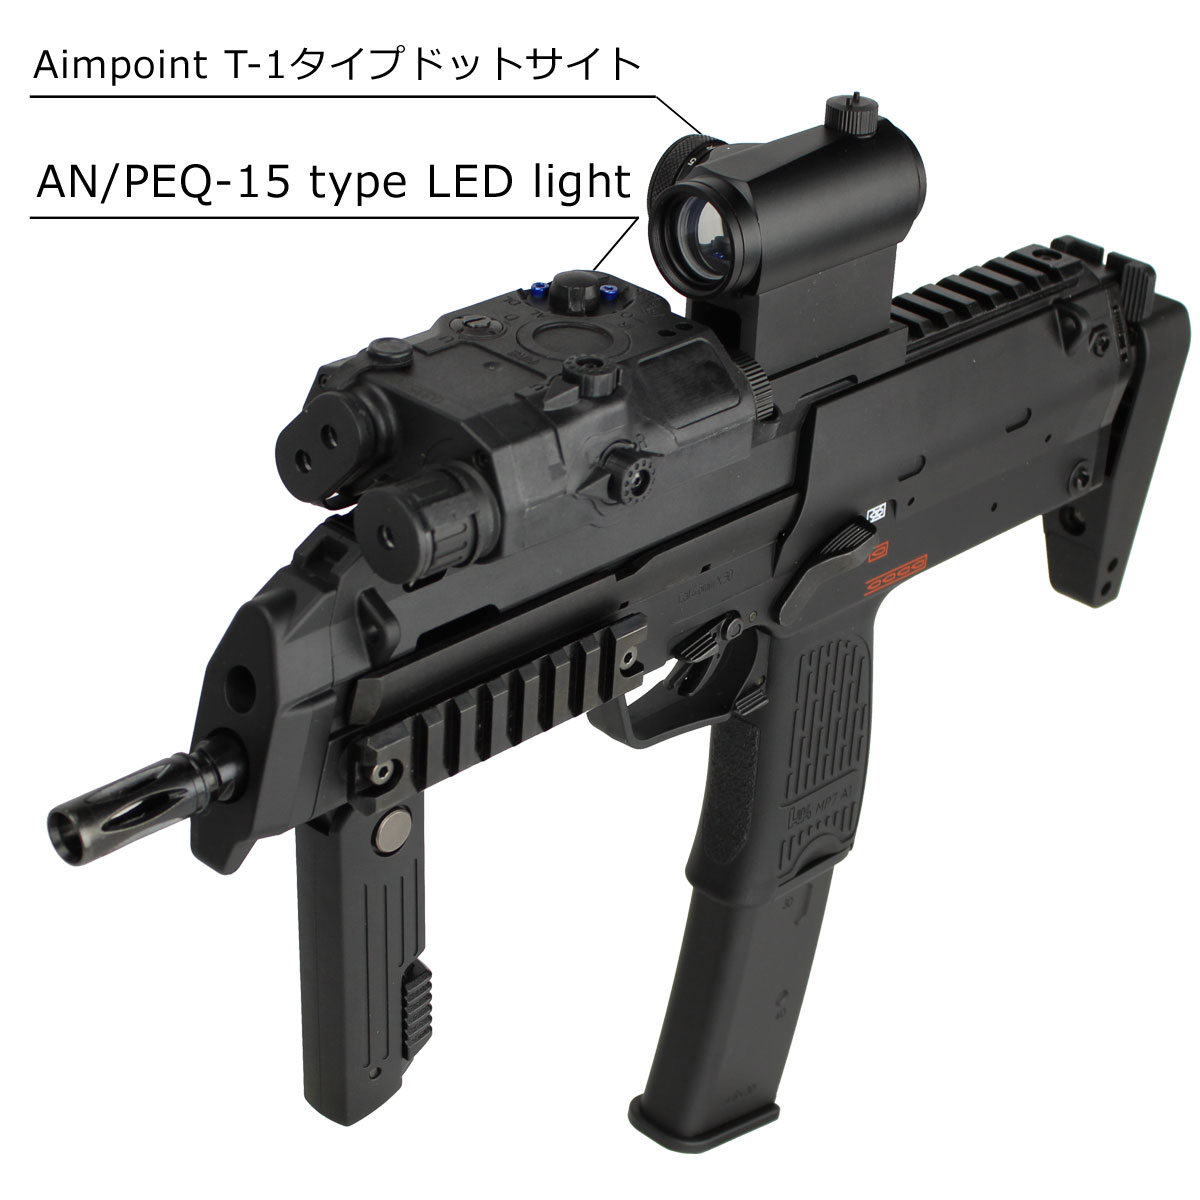 東京マルイ東京マルイ MP7A1 ドットサイト ライトセット - トイガン